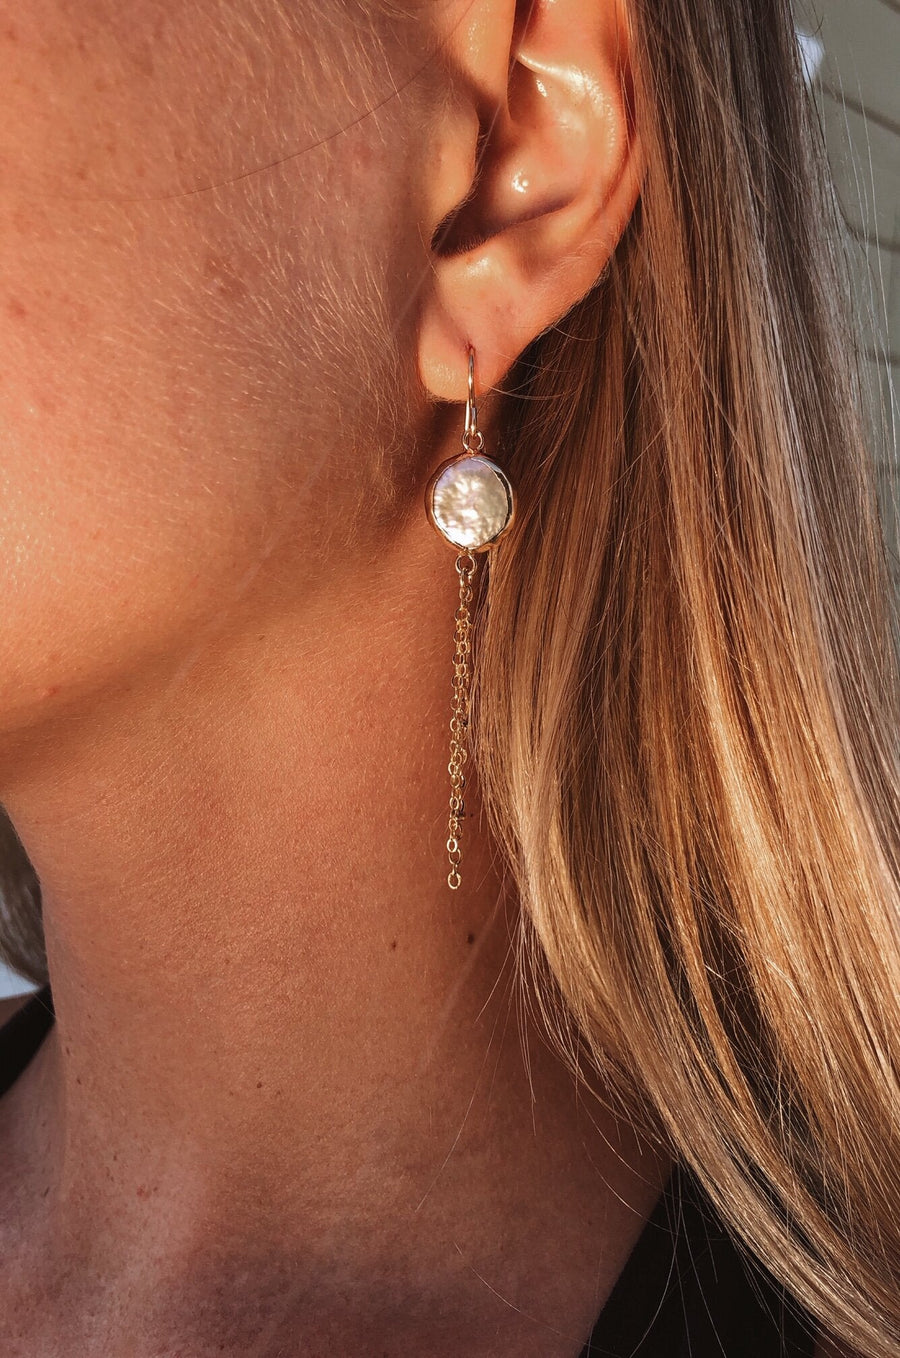 Rowan Earrings by Toasted Jewelry - shopatkonus